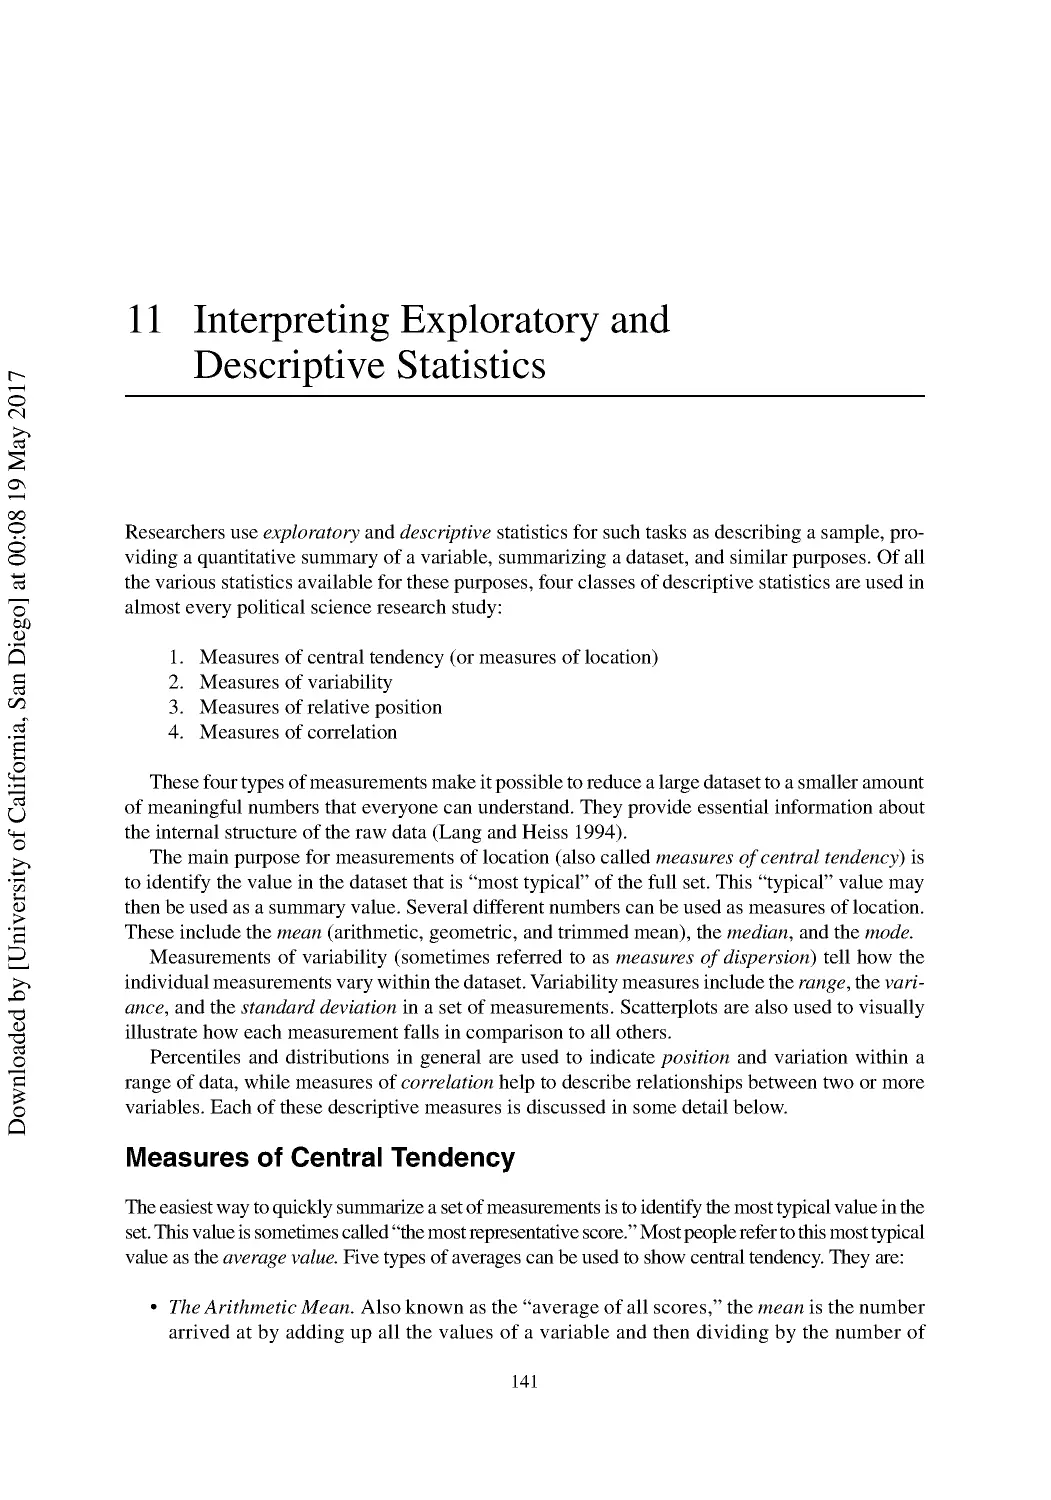 11 Interpreting Exploratory and Descriptive Statistics